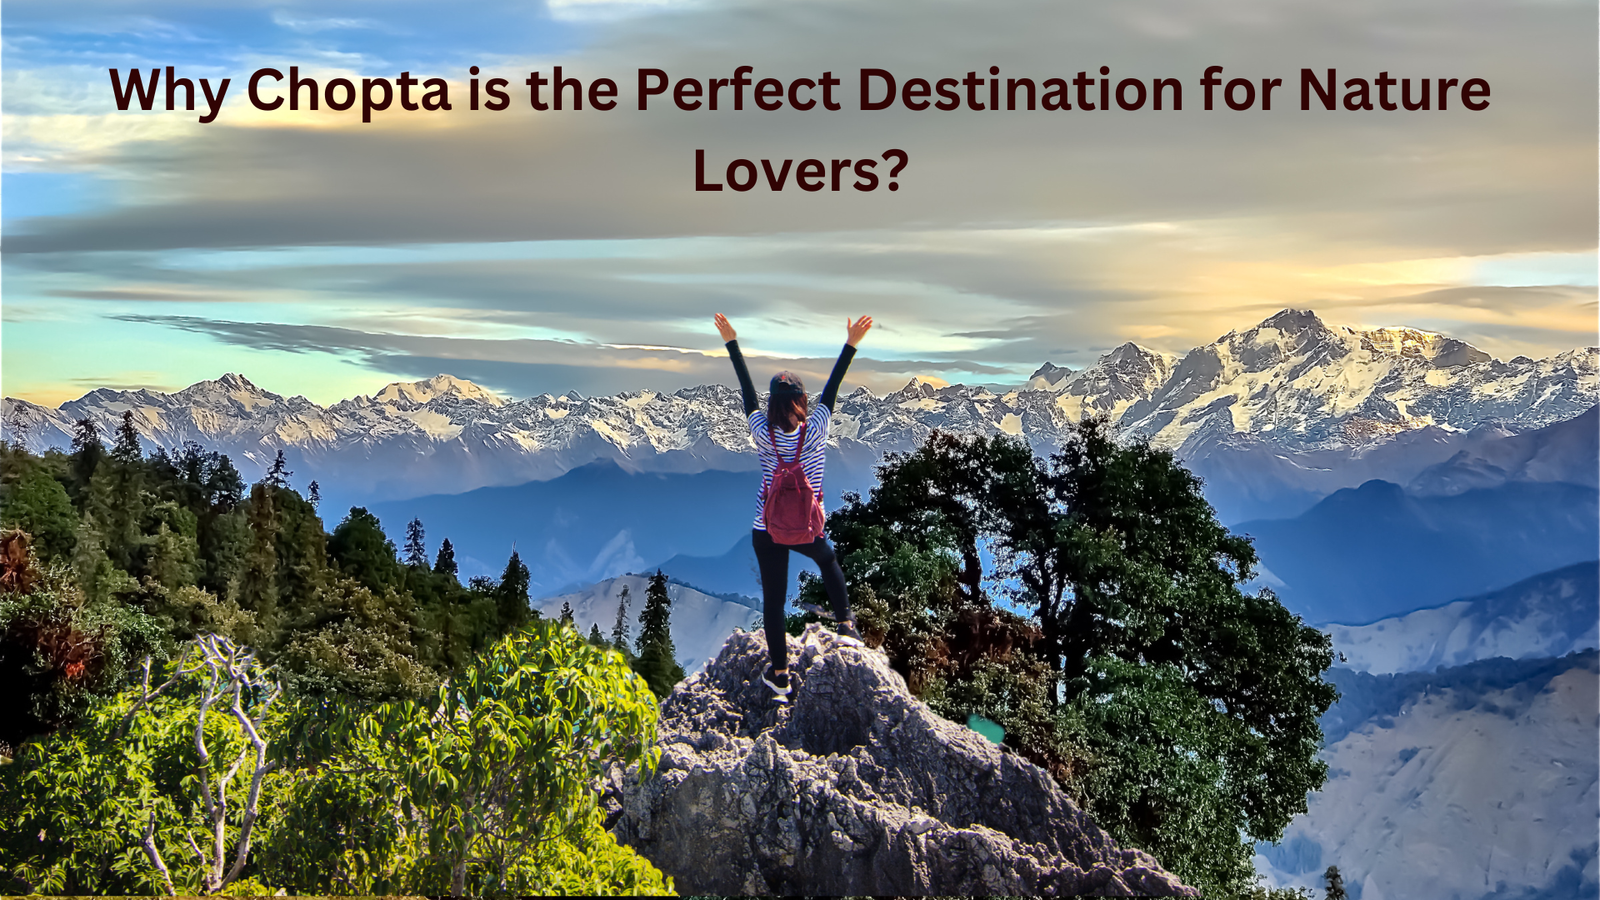 Chopta: The Perfect Destination